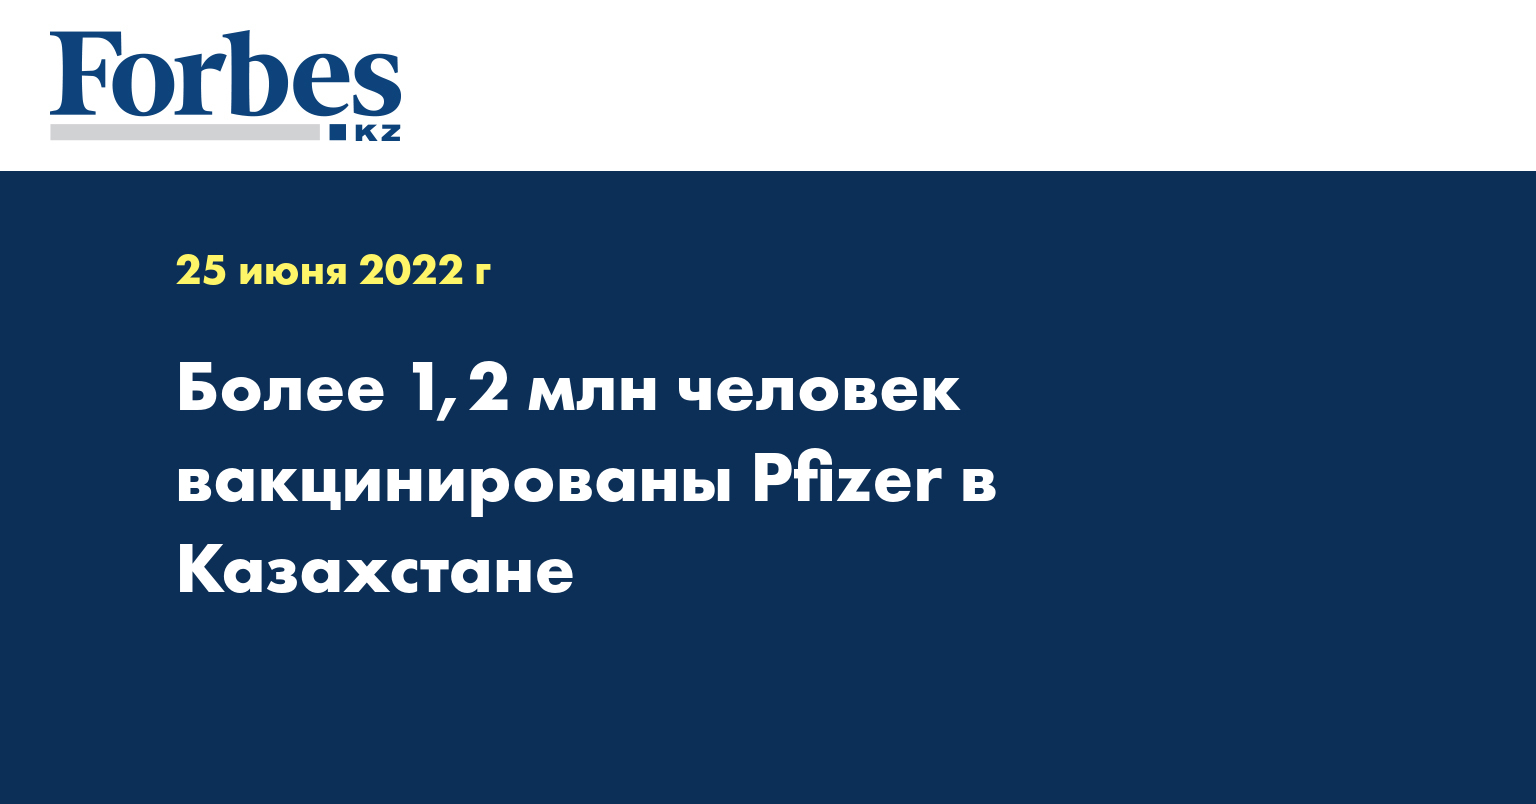 Более 1,2 млн человек вакцинированы Pfizer в Казахстане